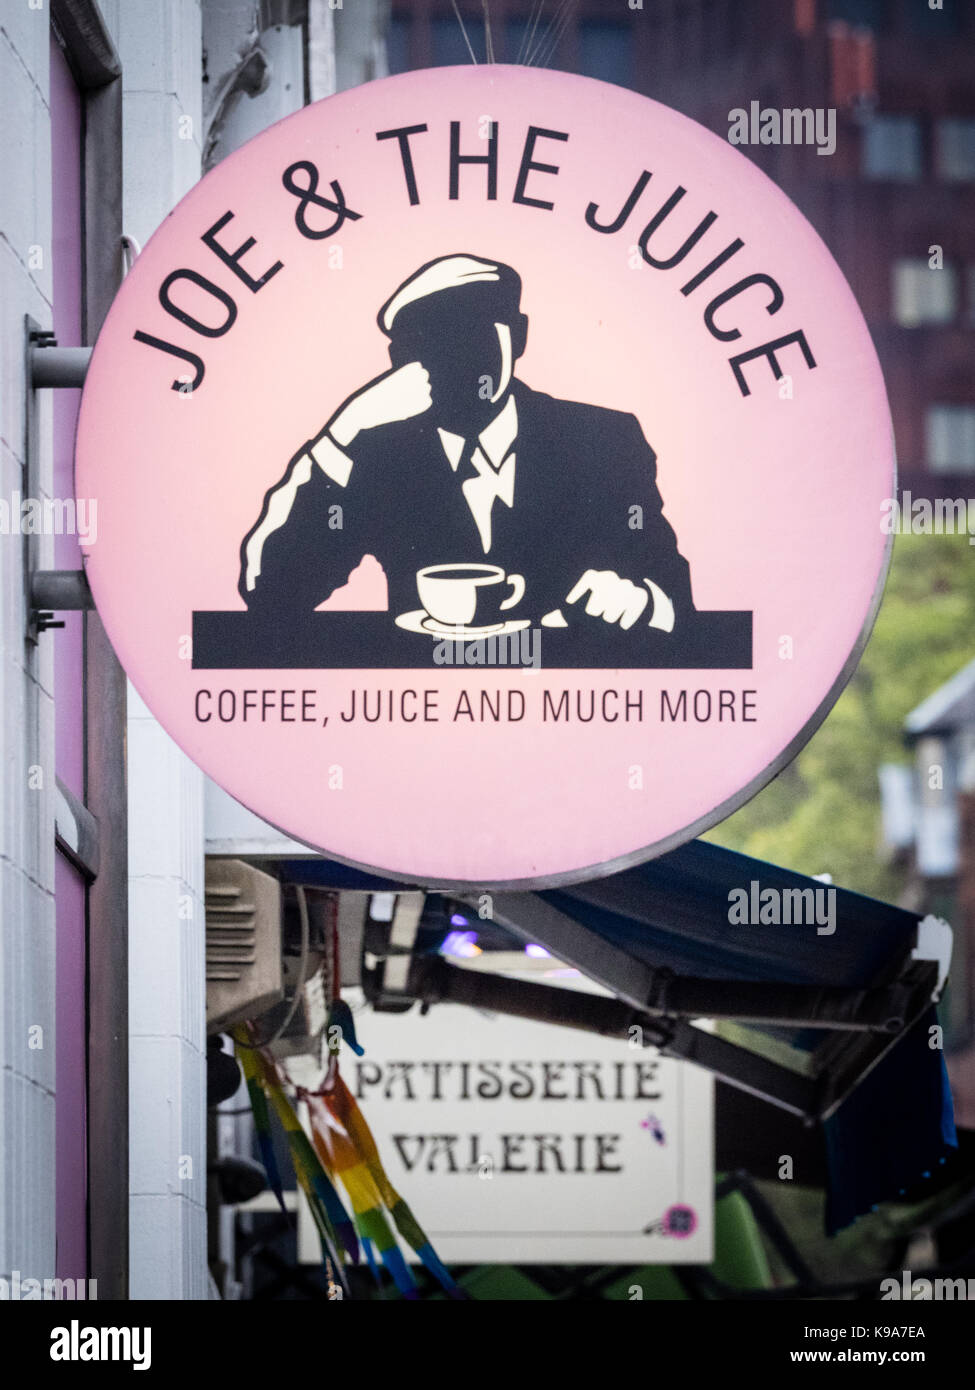 Joe e il succo Cafe Restaurant Sign in Old Compton Street, Soho, Londra, Regno Unito. Joe e il succo è una catena originariamente impostata in Danimarca. Foto Stock